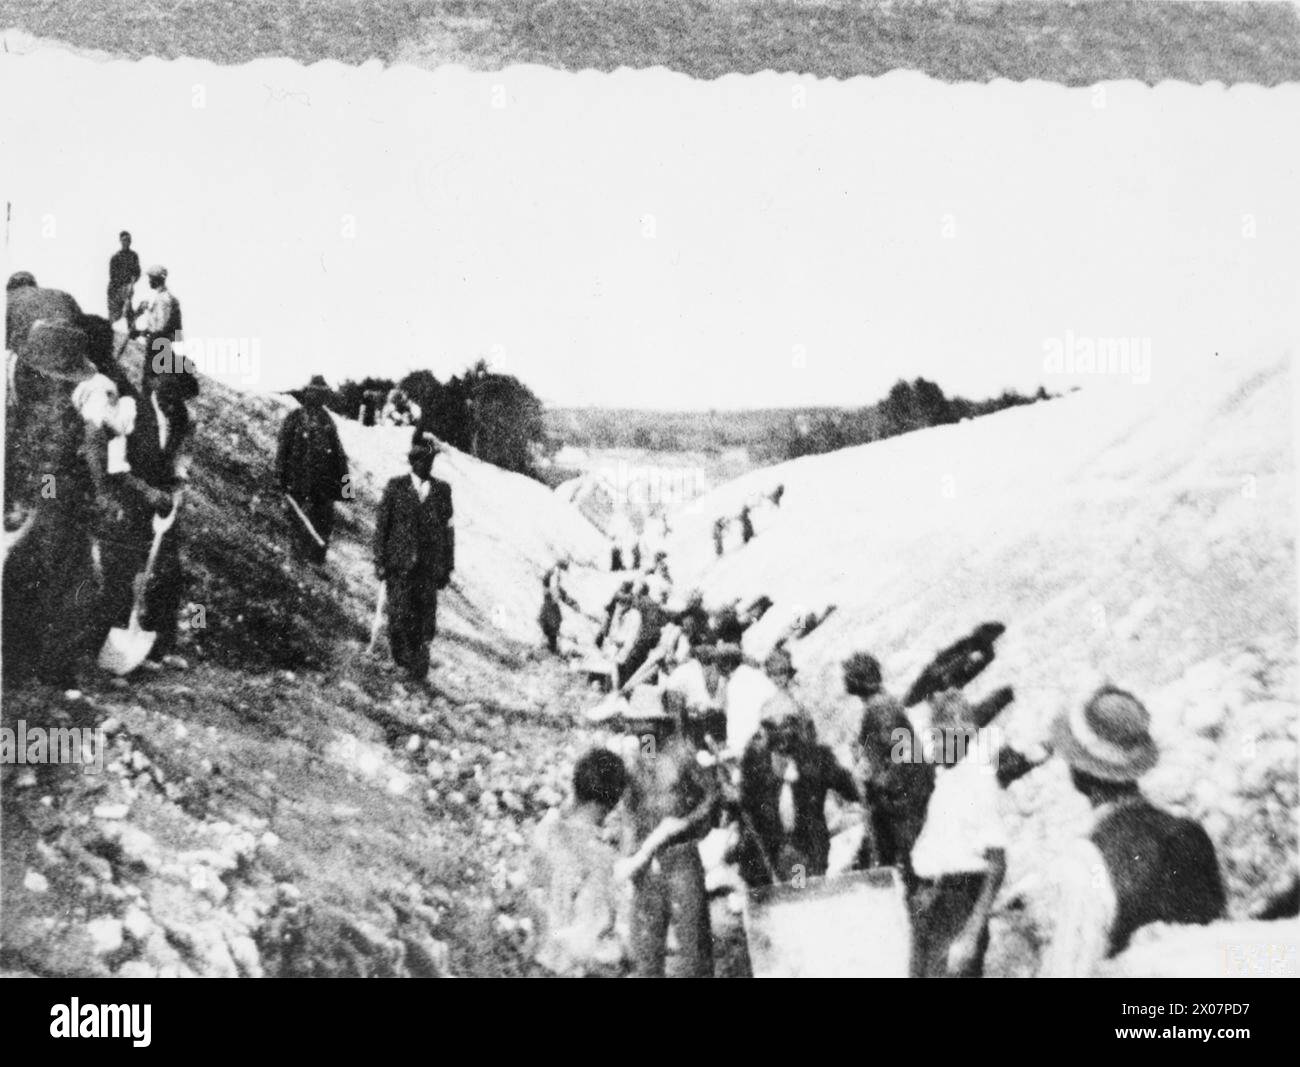 L'OCCUPATION GERMANO-SOVIÉTIQUE DE LA POLOGNE, 1939-1941 - des esclaves juifs du camp de travail de Belzec creusant un fossé antichar sur la ligne de démarcation germano-soviétique, 1940 Banque D'Images